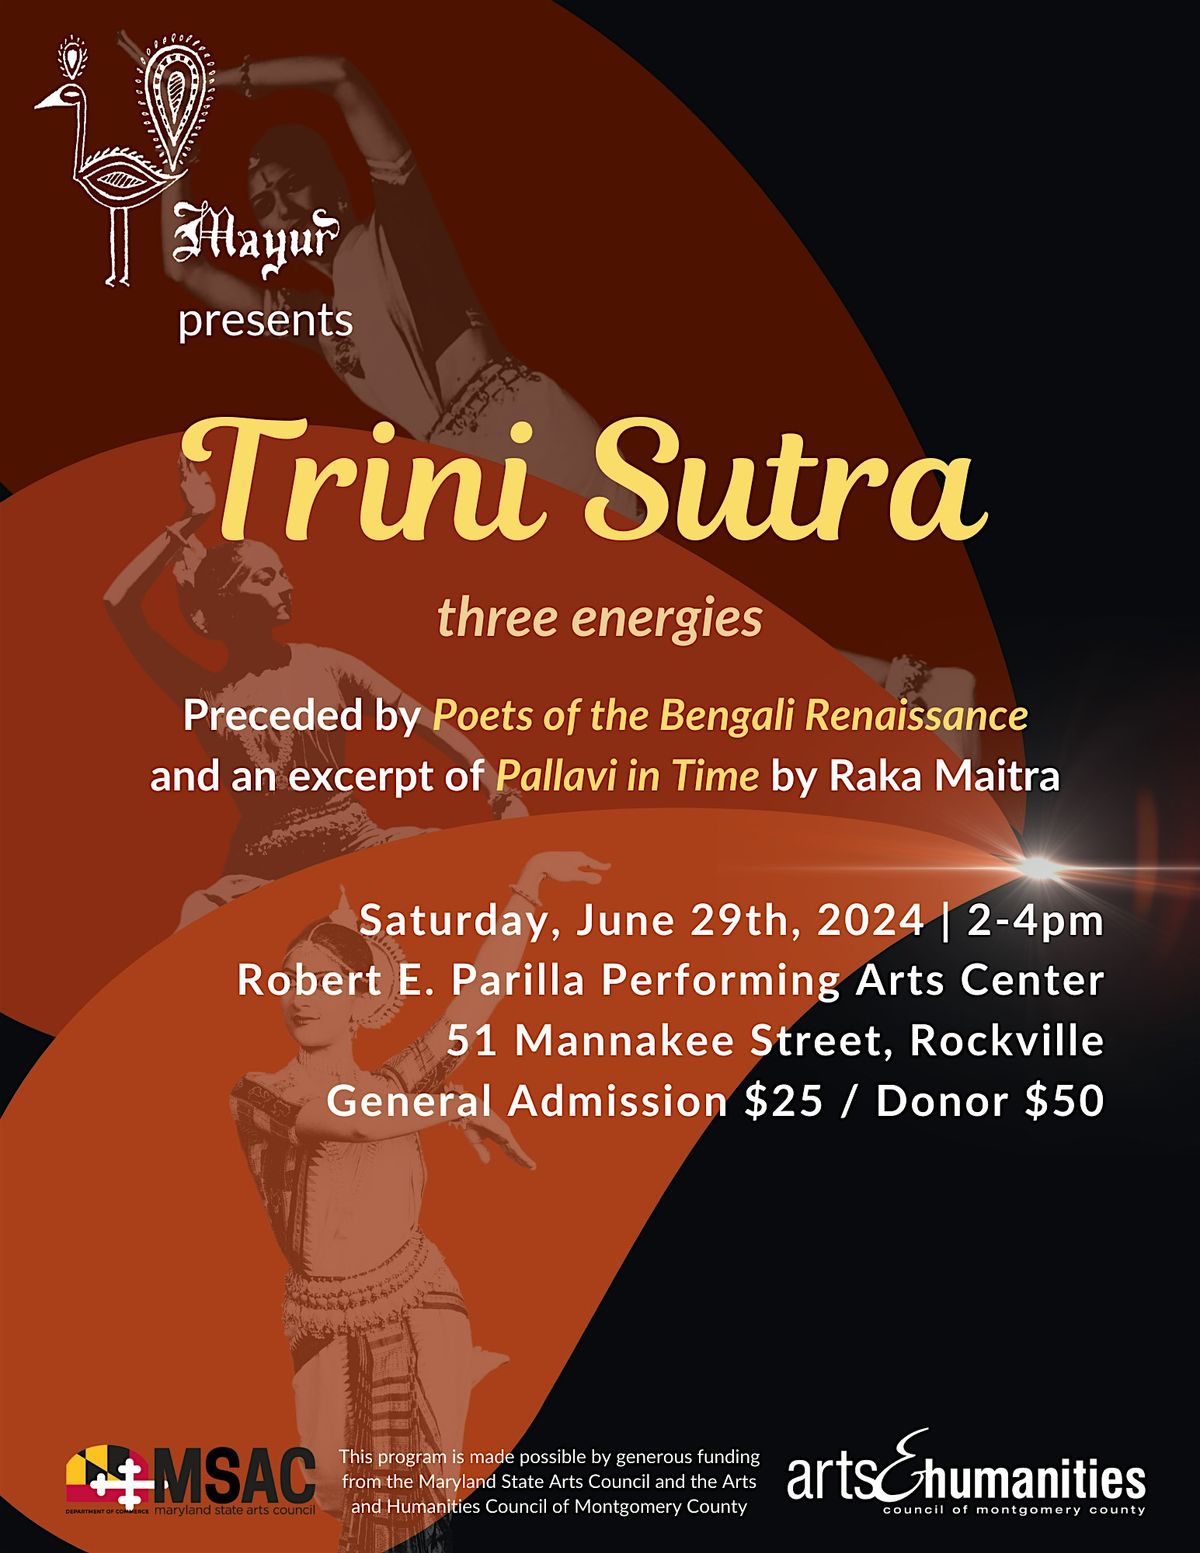 Trini Sutra - three energies